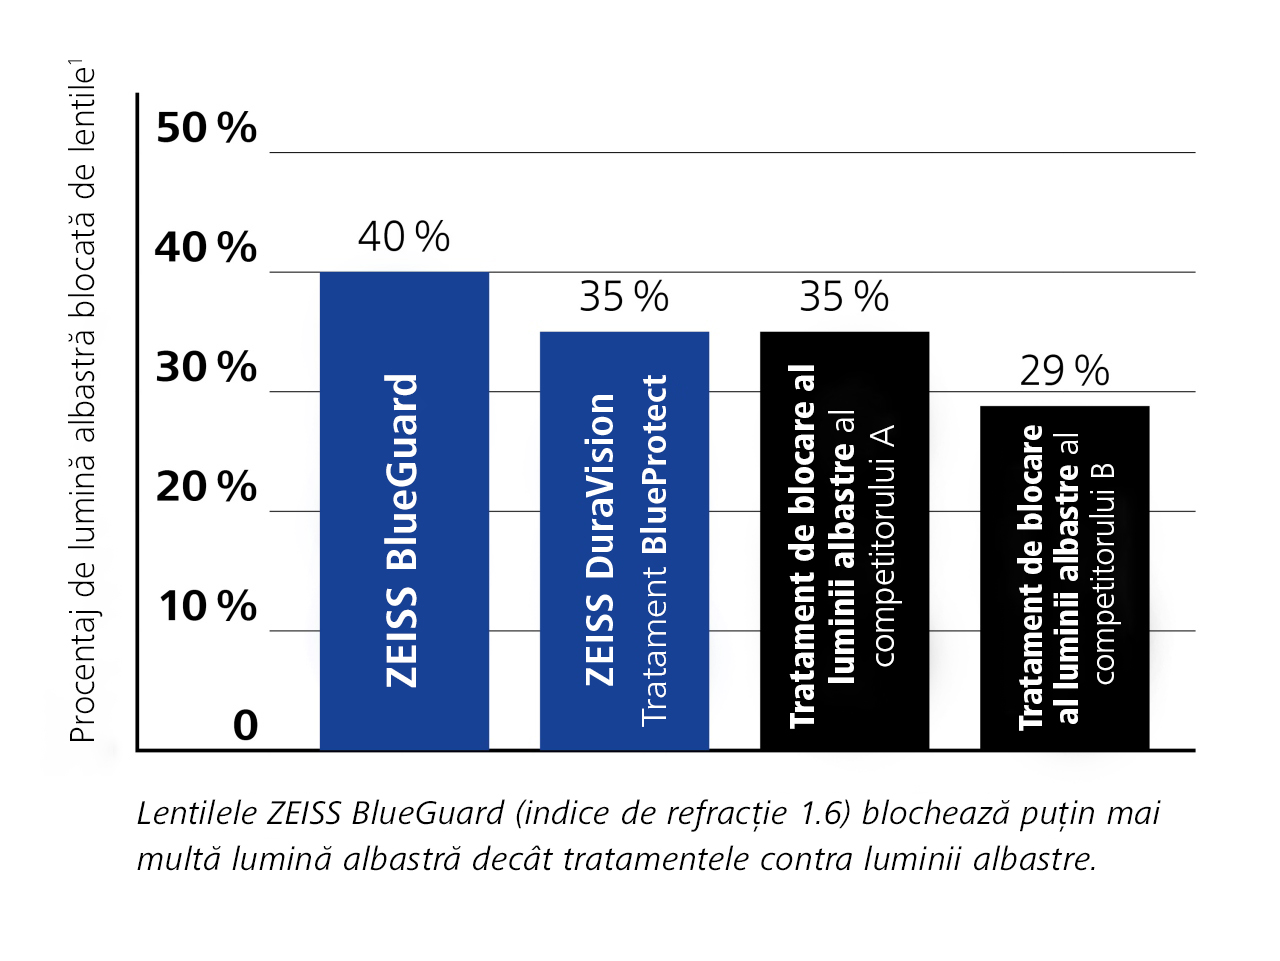 Diagramă cu cifre importante privind lentilele ZEISS BlueGuard comparativ cu produse similare.